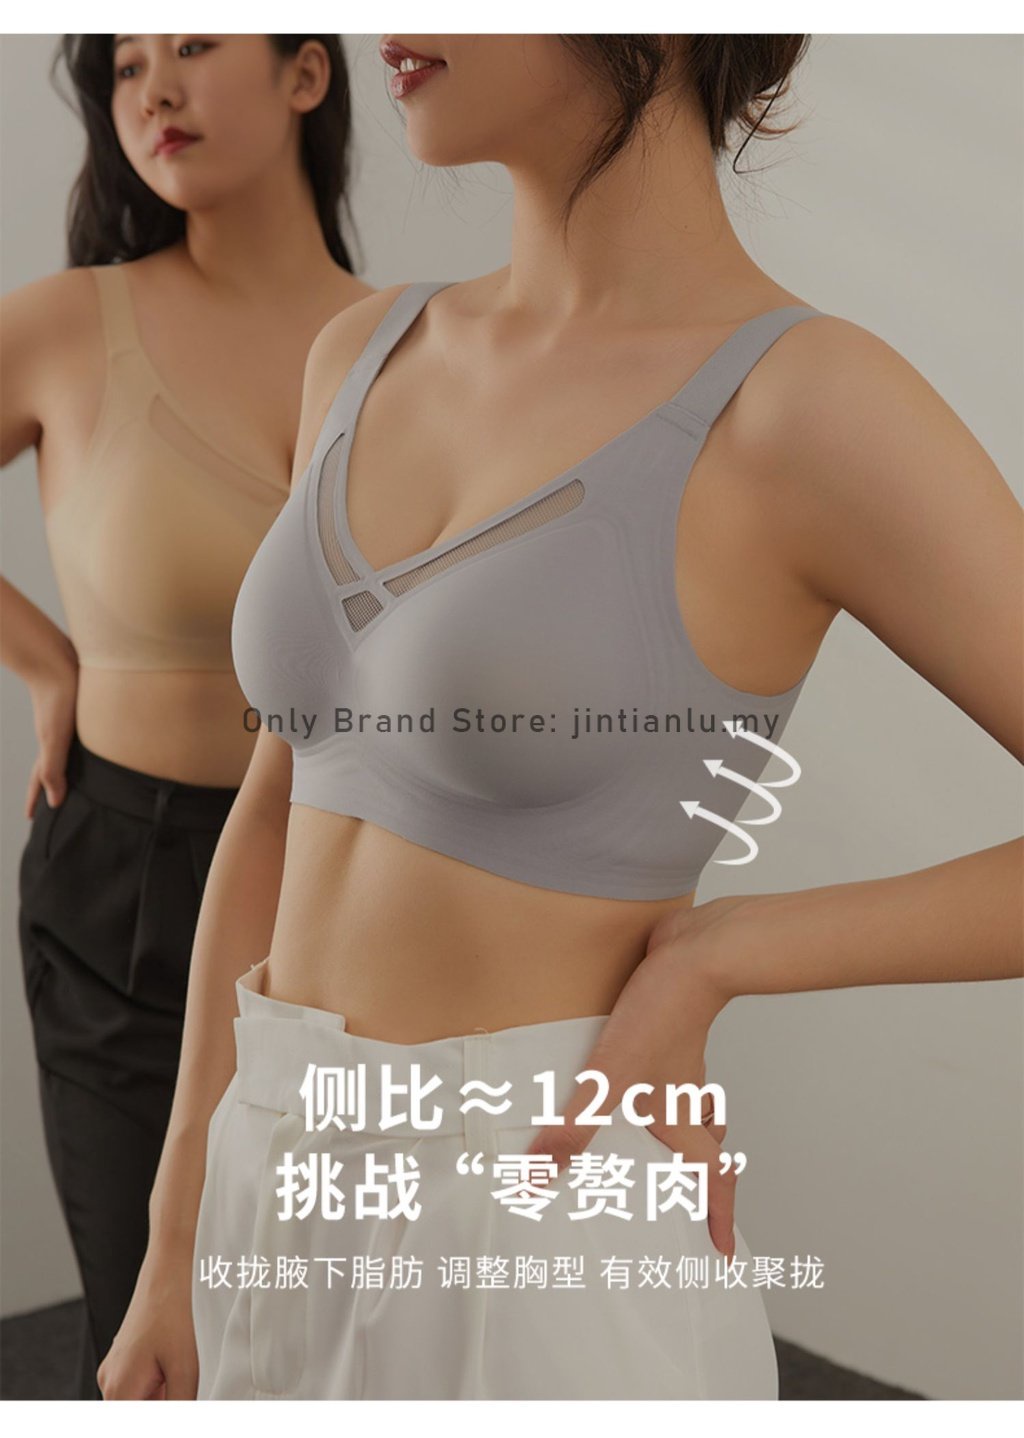 专柜品质 L-3XL BCD cup Japan SUJI large cup bra, silicone soft support bra,  wide shoulder straps prevent sagging push up bra, mesh seamless breathable  women's full cup bra